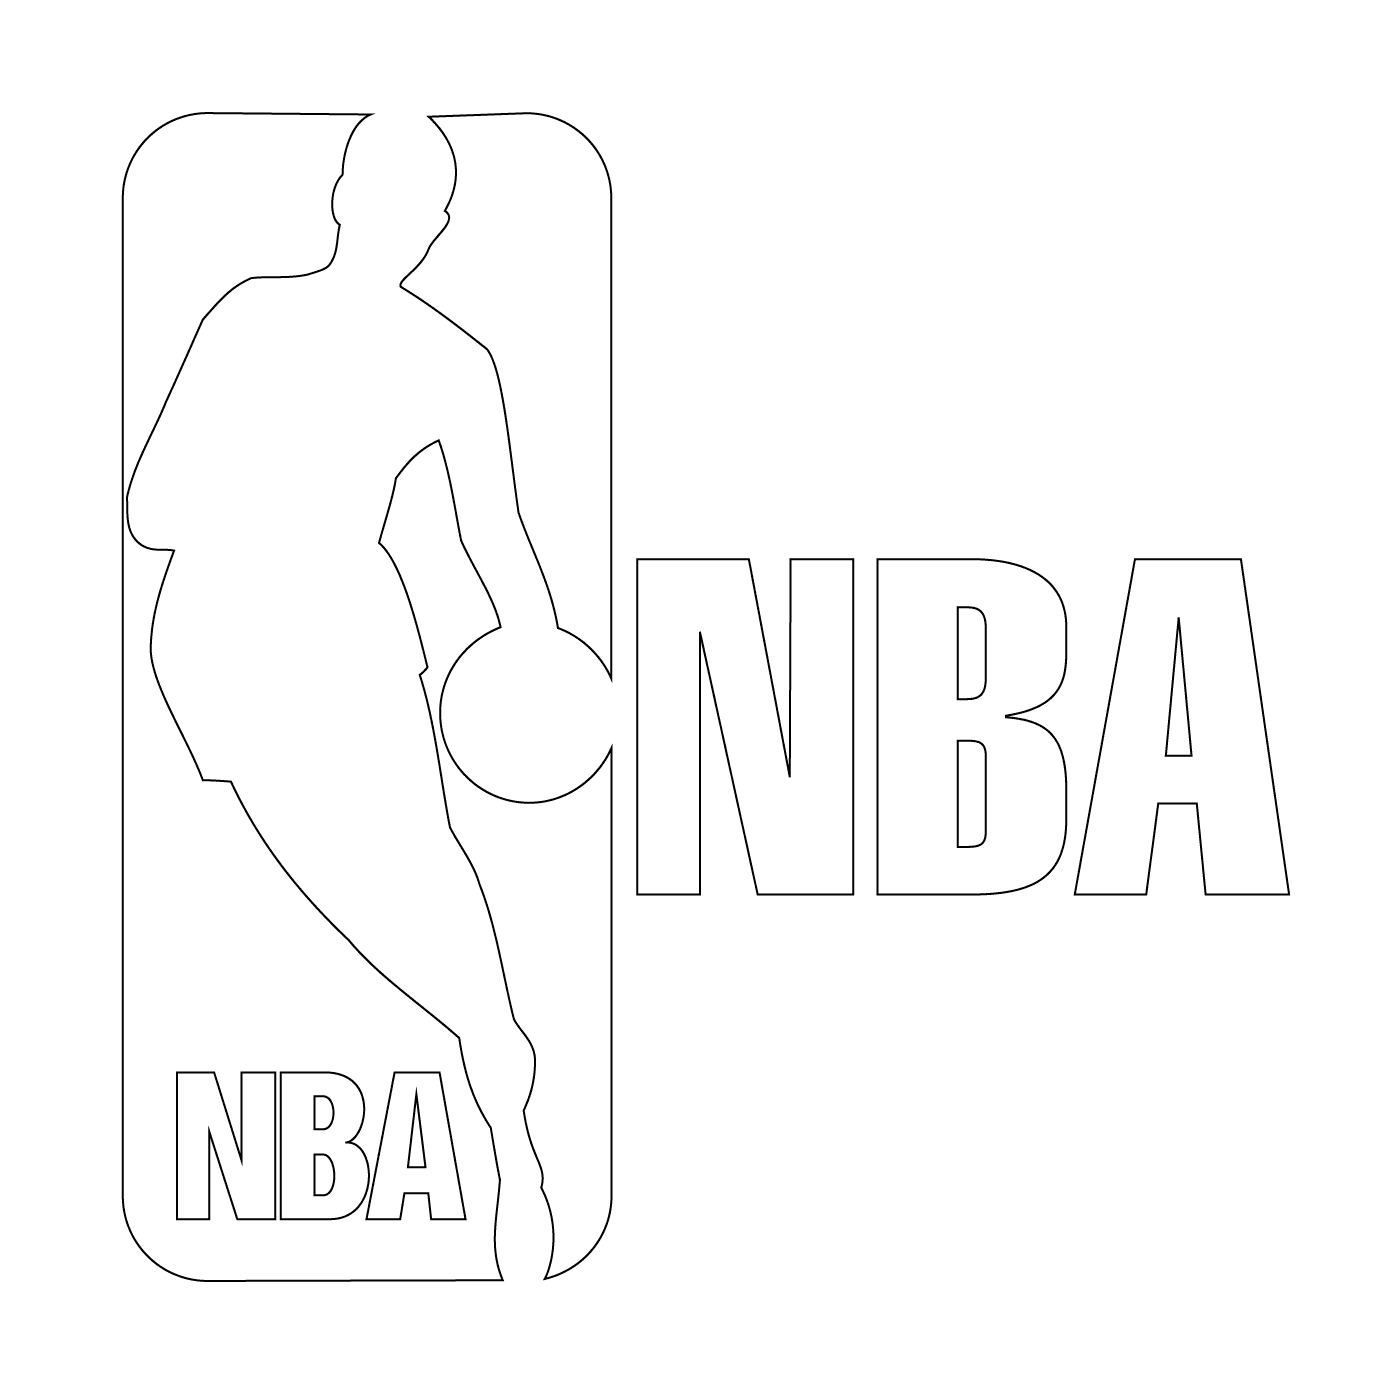  The NBA logo, a basketball player 